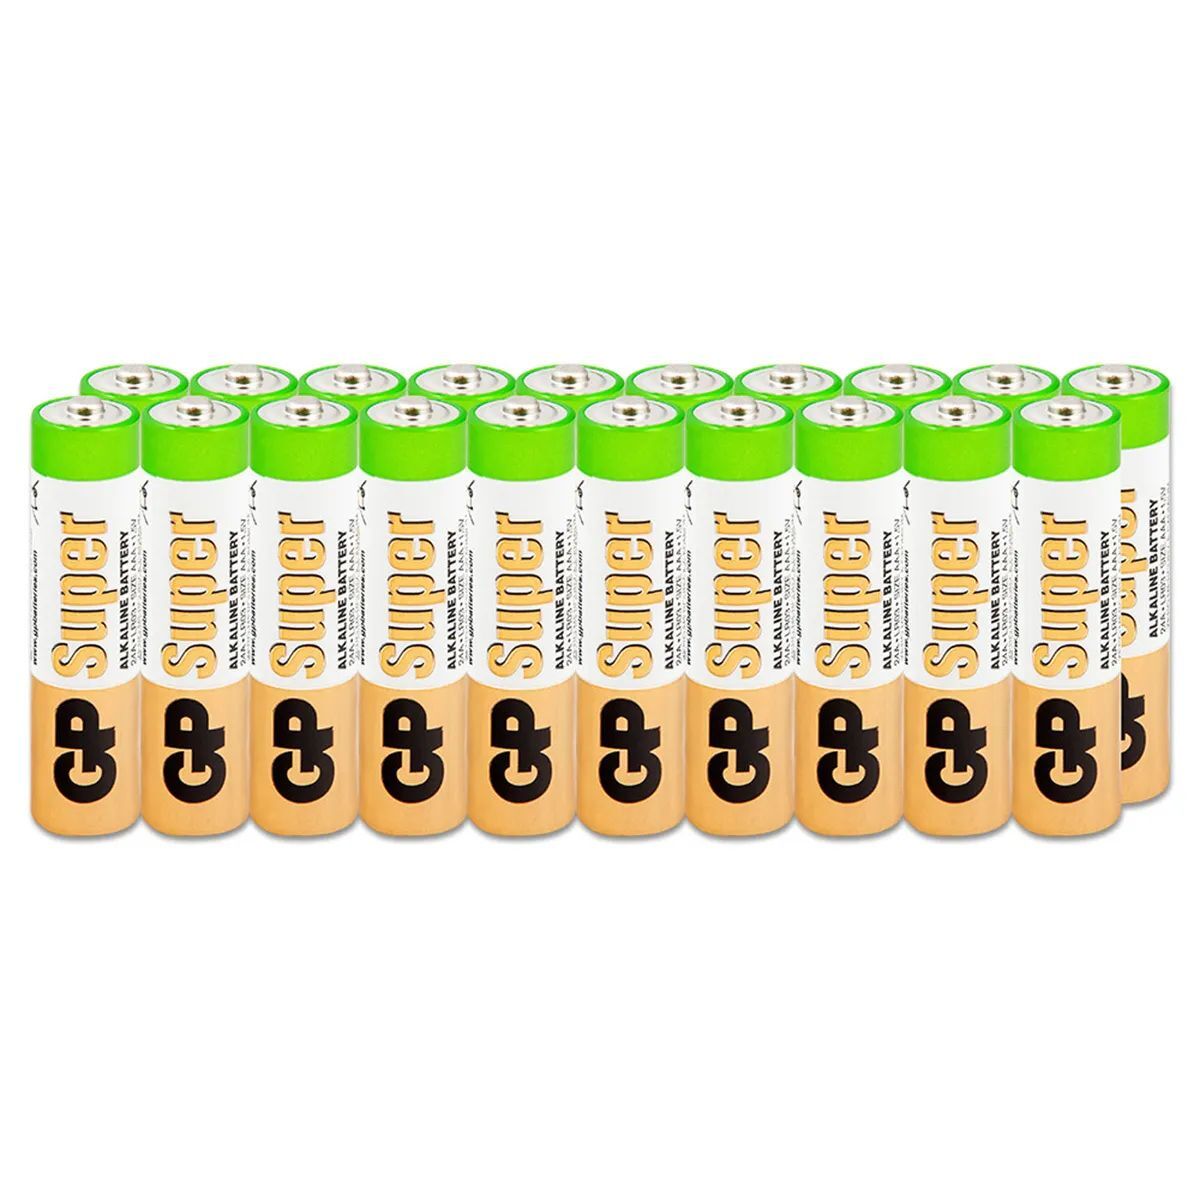 Батарейки GP Super Alkaline ААA/LR03 (мизинчиковые) упаковка 20 штук - купить в Styluson, цена на Мегамаркет